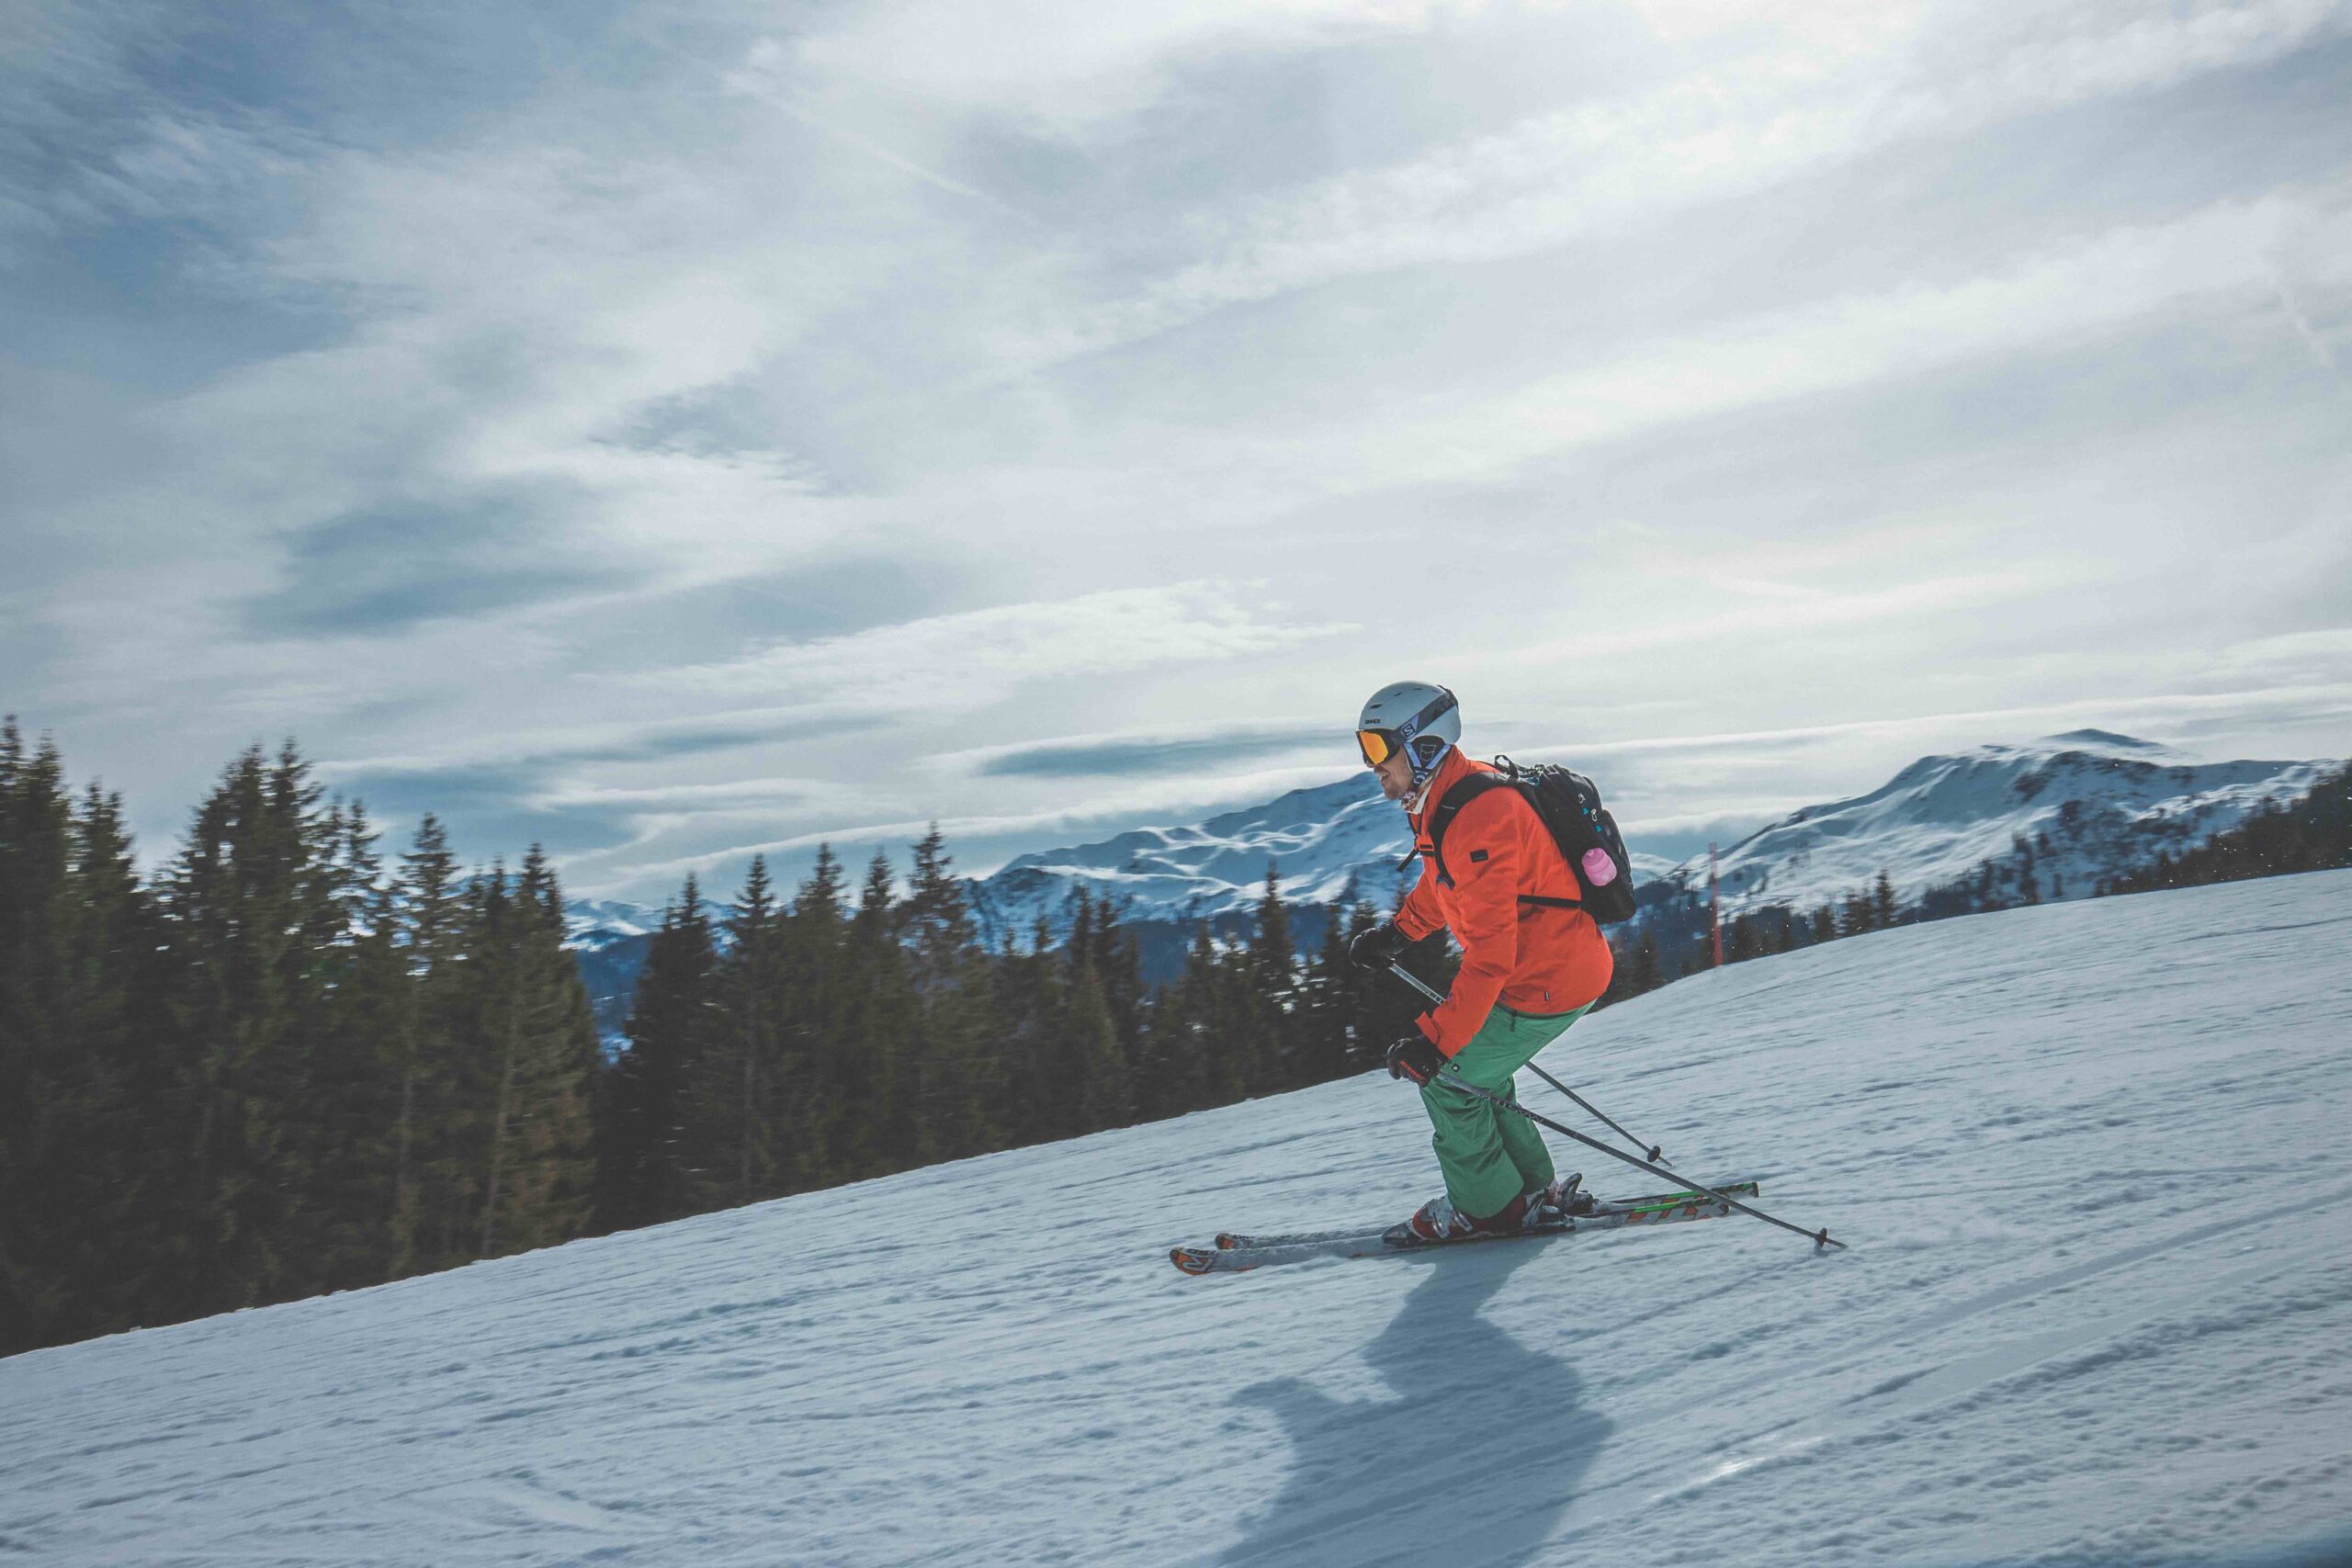 Sulle piste da sci ci sono 30 mila incidenti all’anno